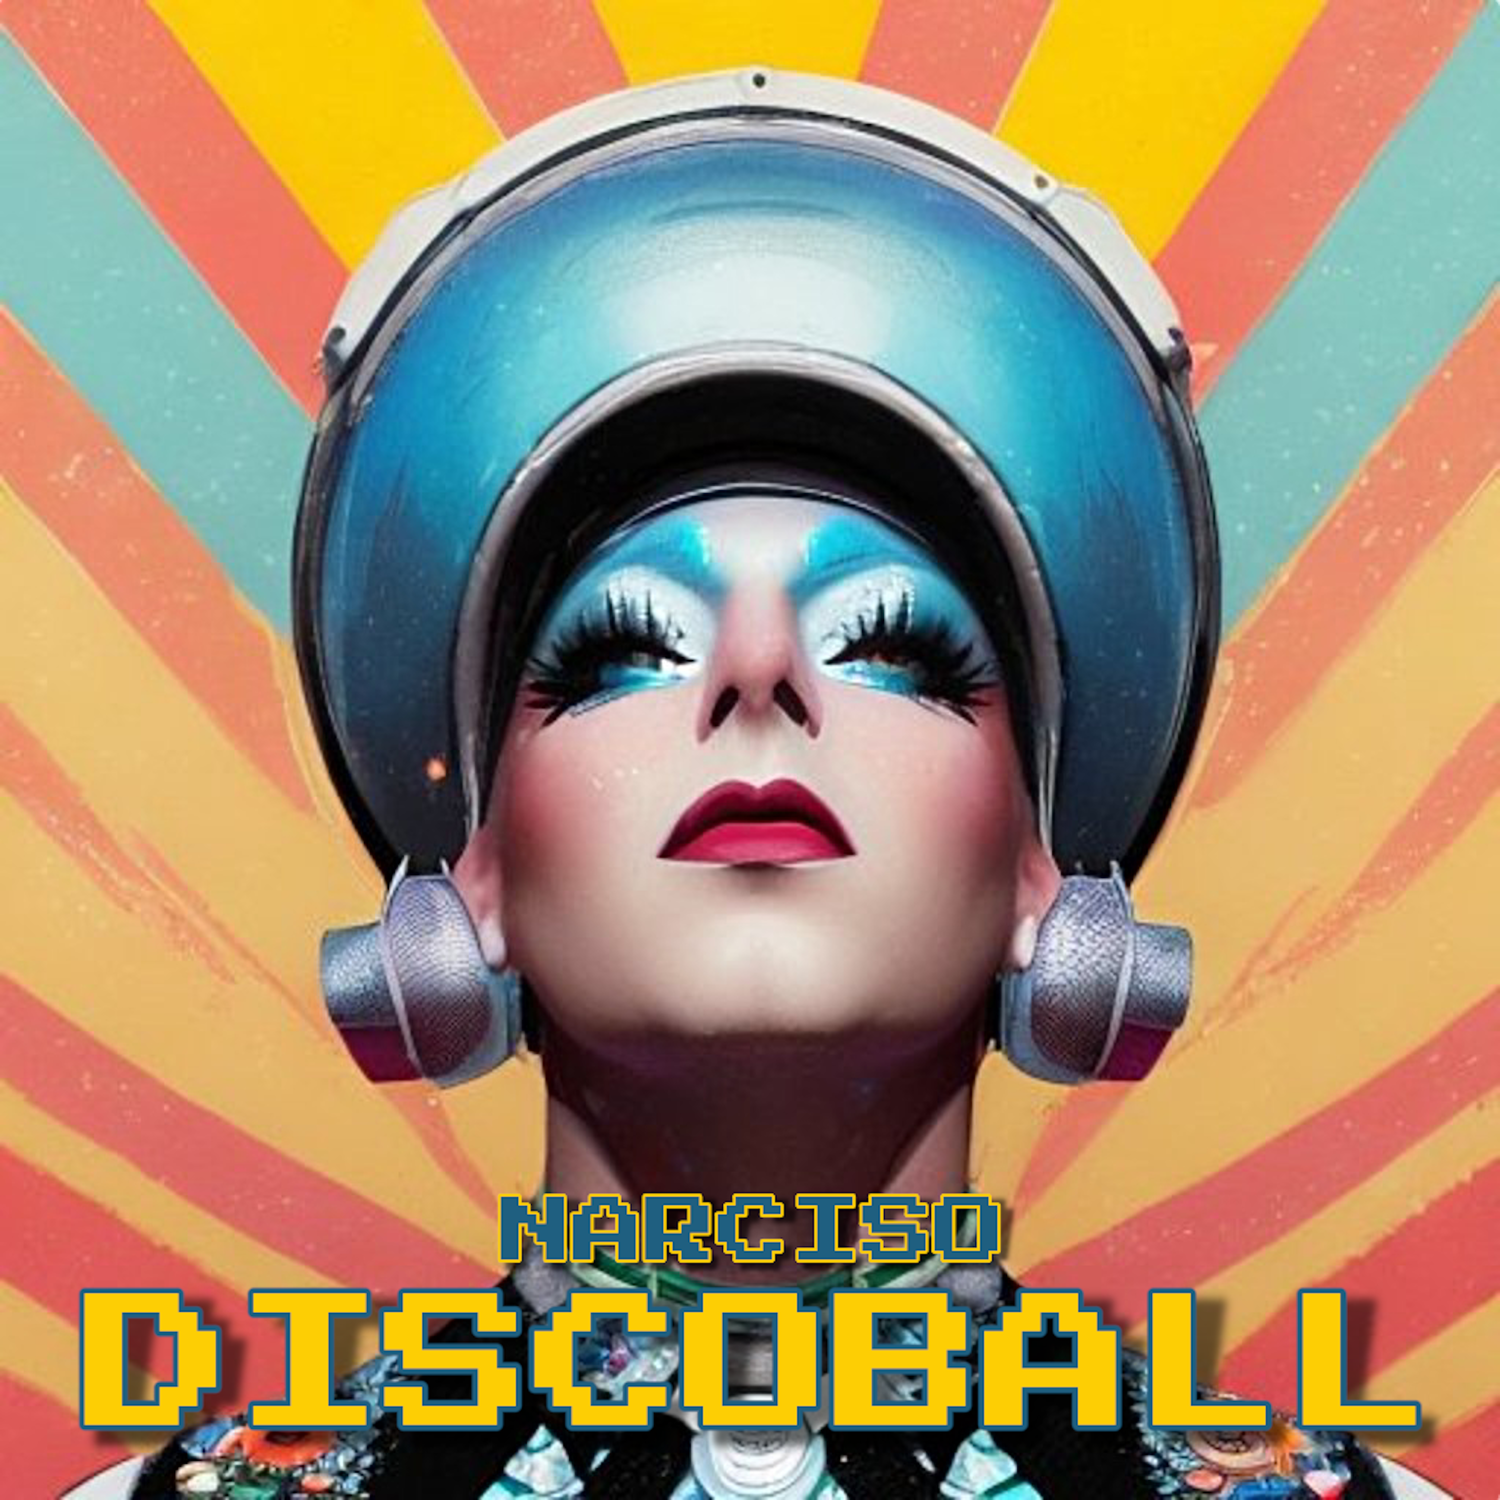 Narciso pubblica il terzo singolo “Discoball”